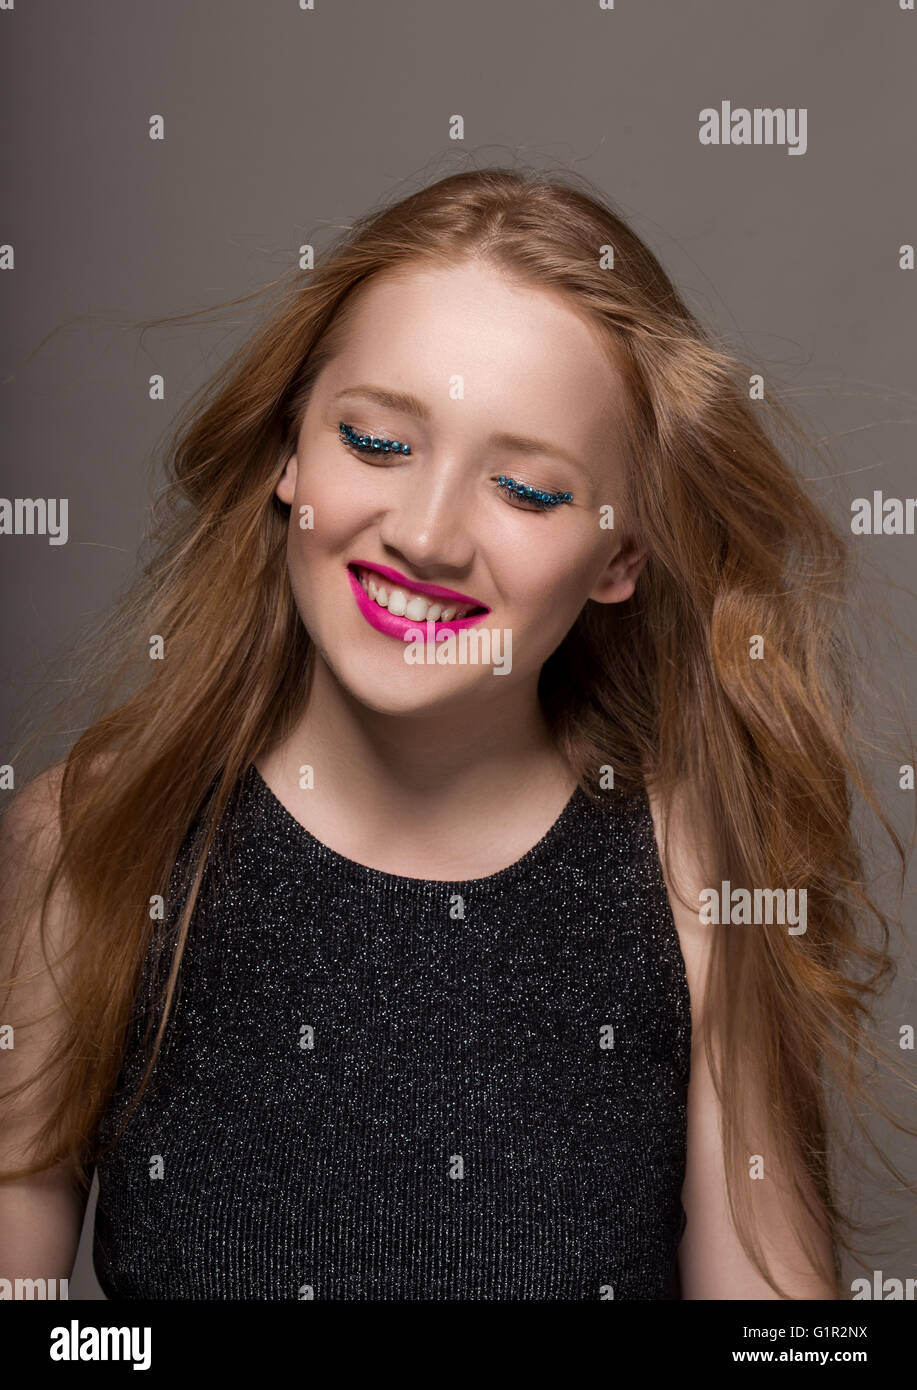 Ritratto di una giovane donna in studio con glittery trucco sorridente Foto Stock